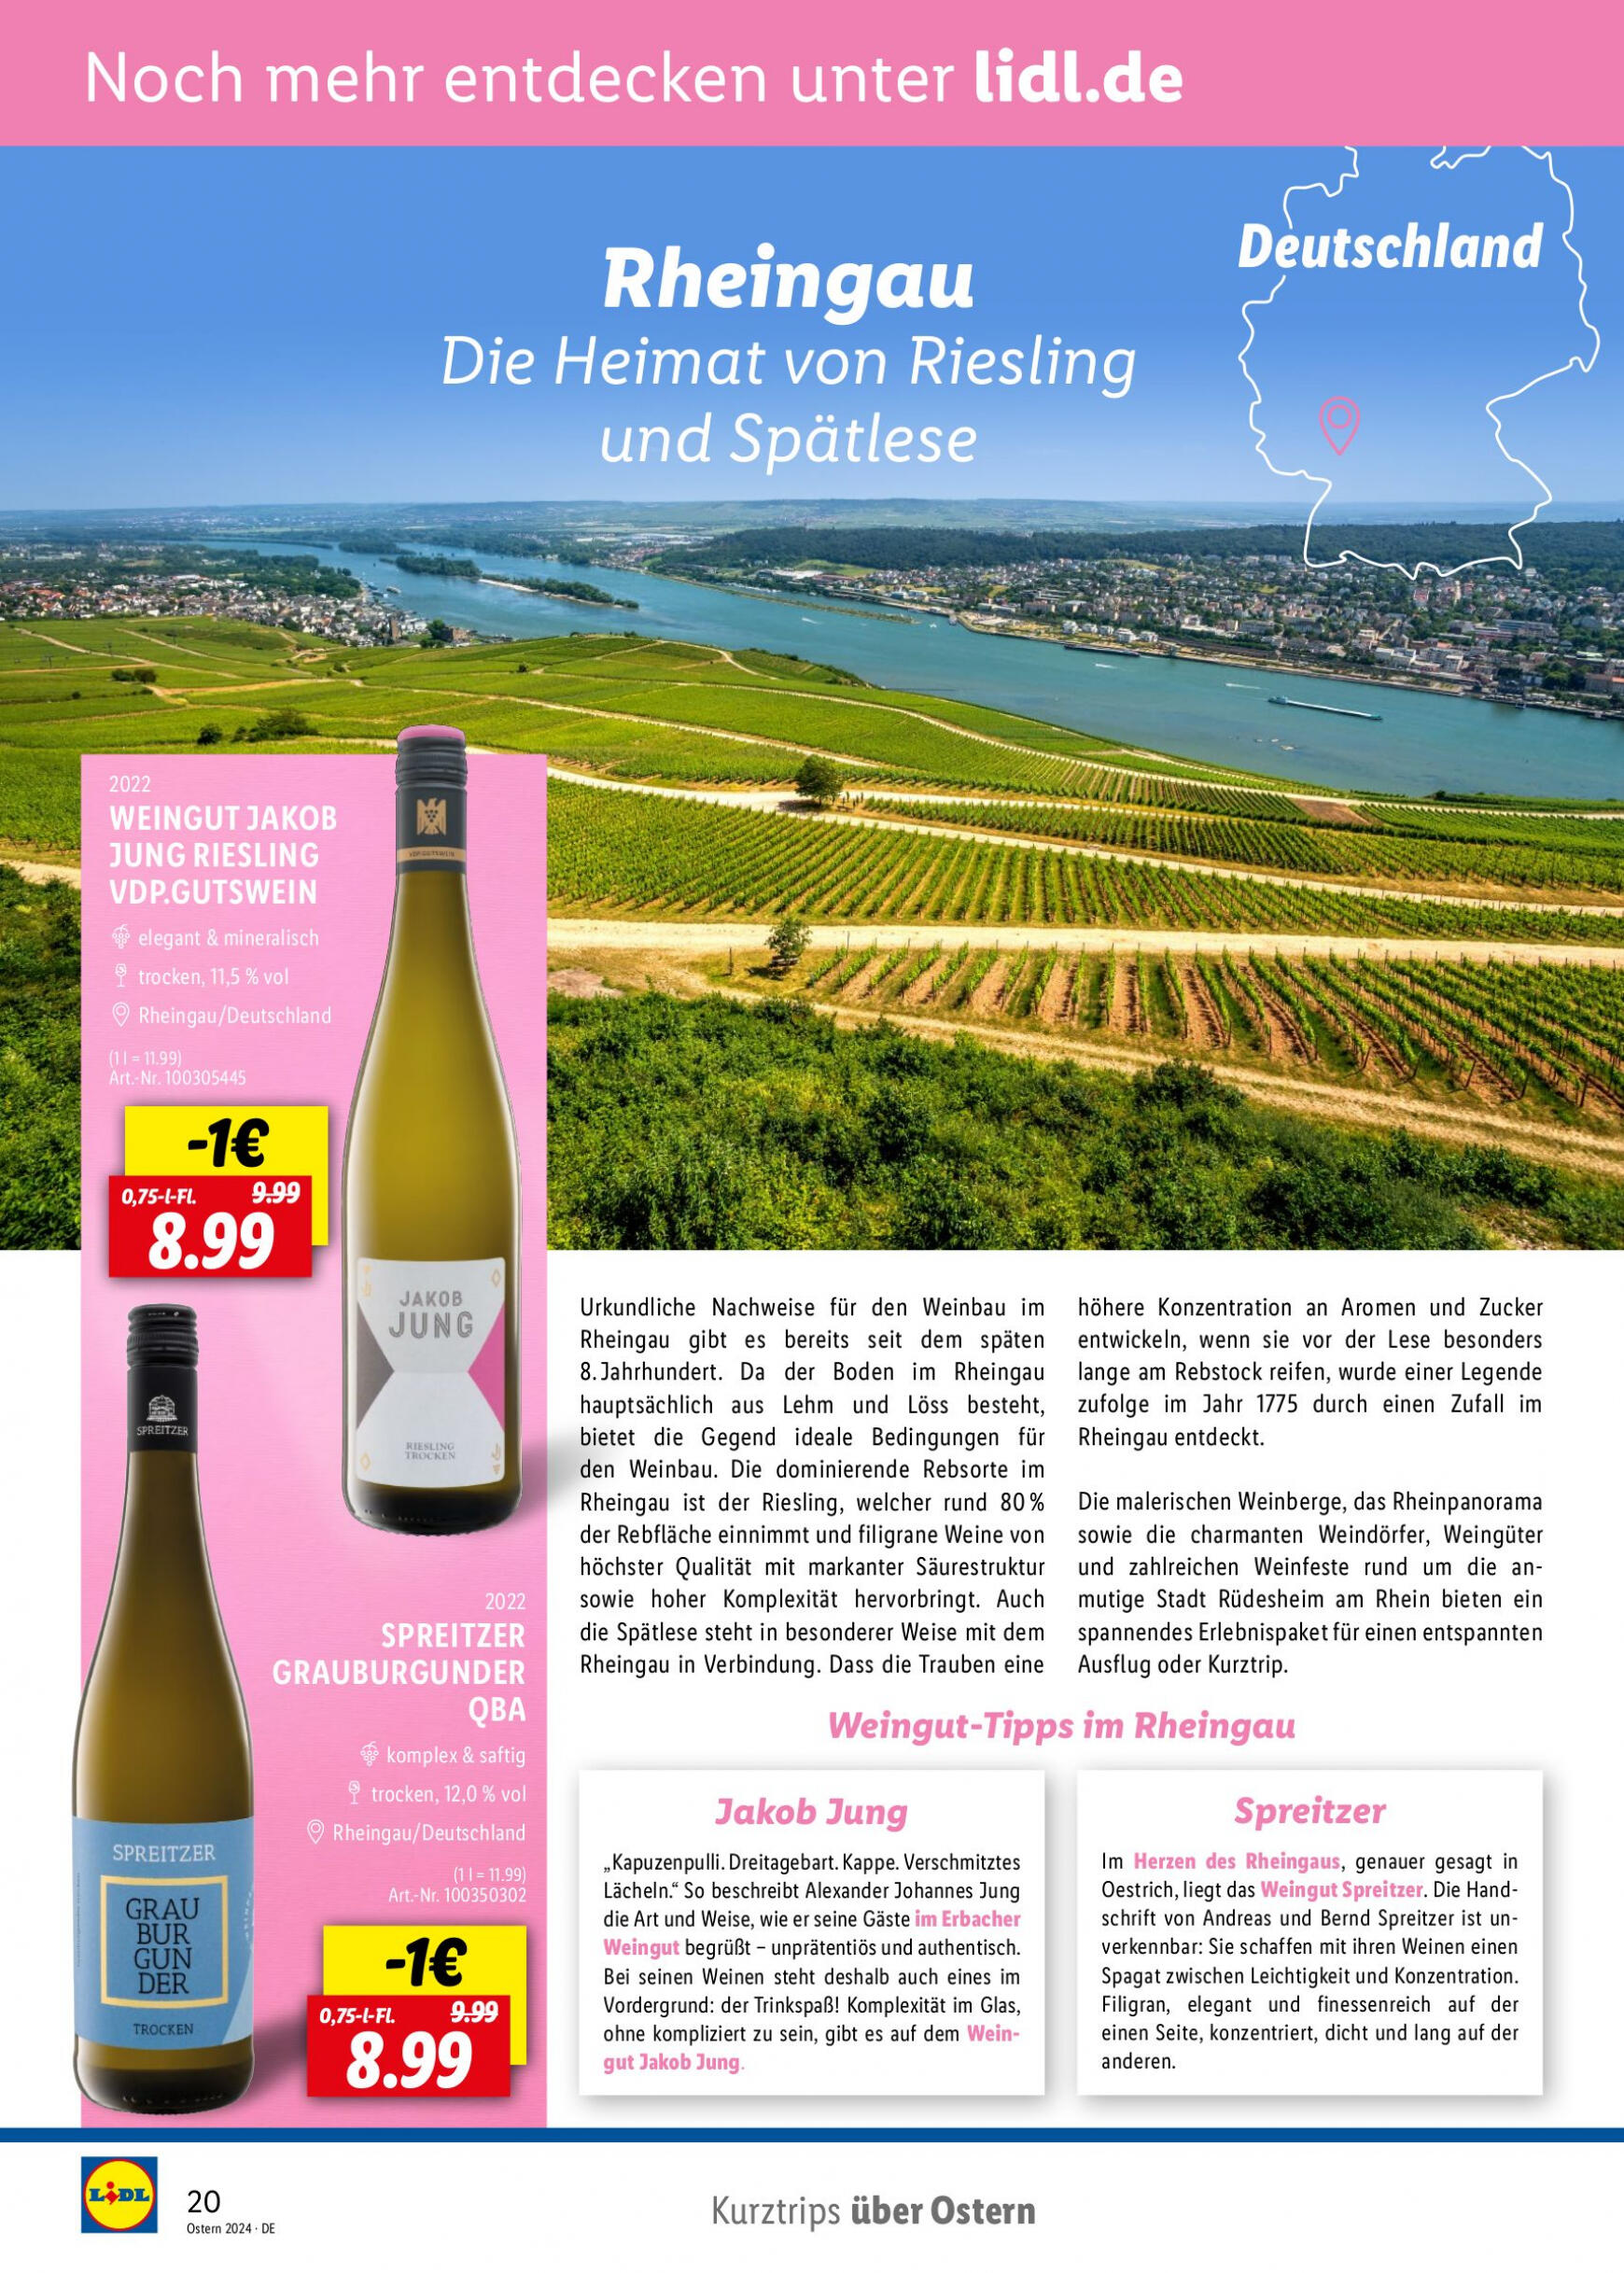 lidl - Flyer Lidl - Wein Entkorkt aktuell 04.03. - 30.04. - page: 20